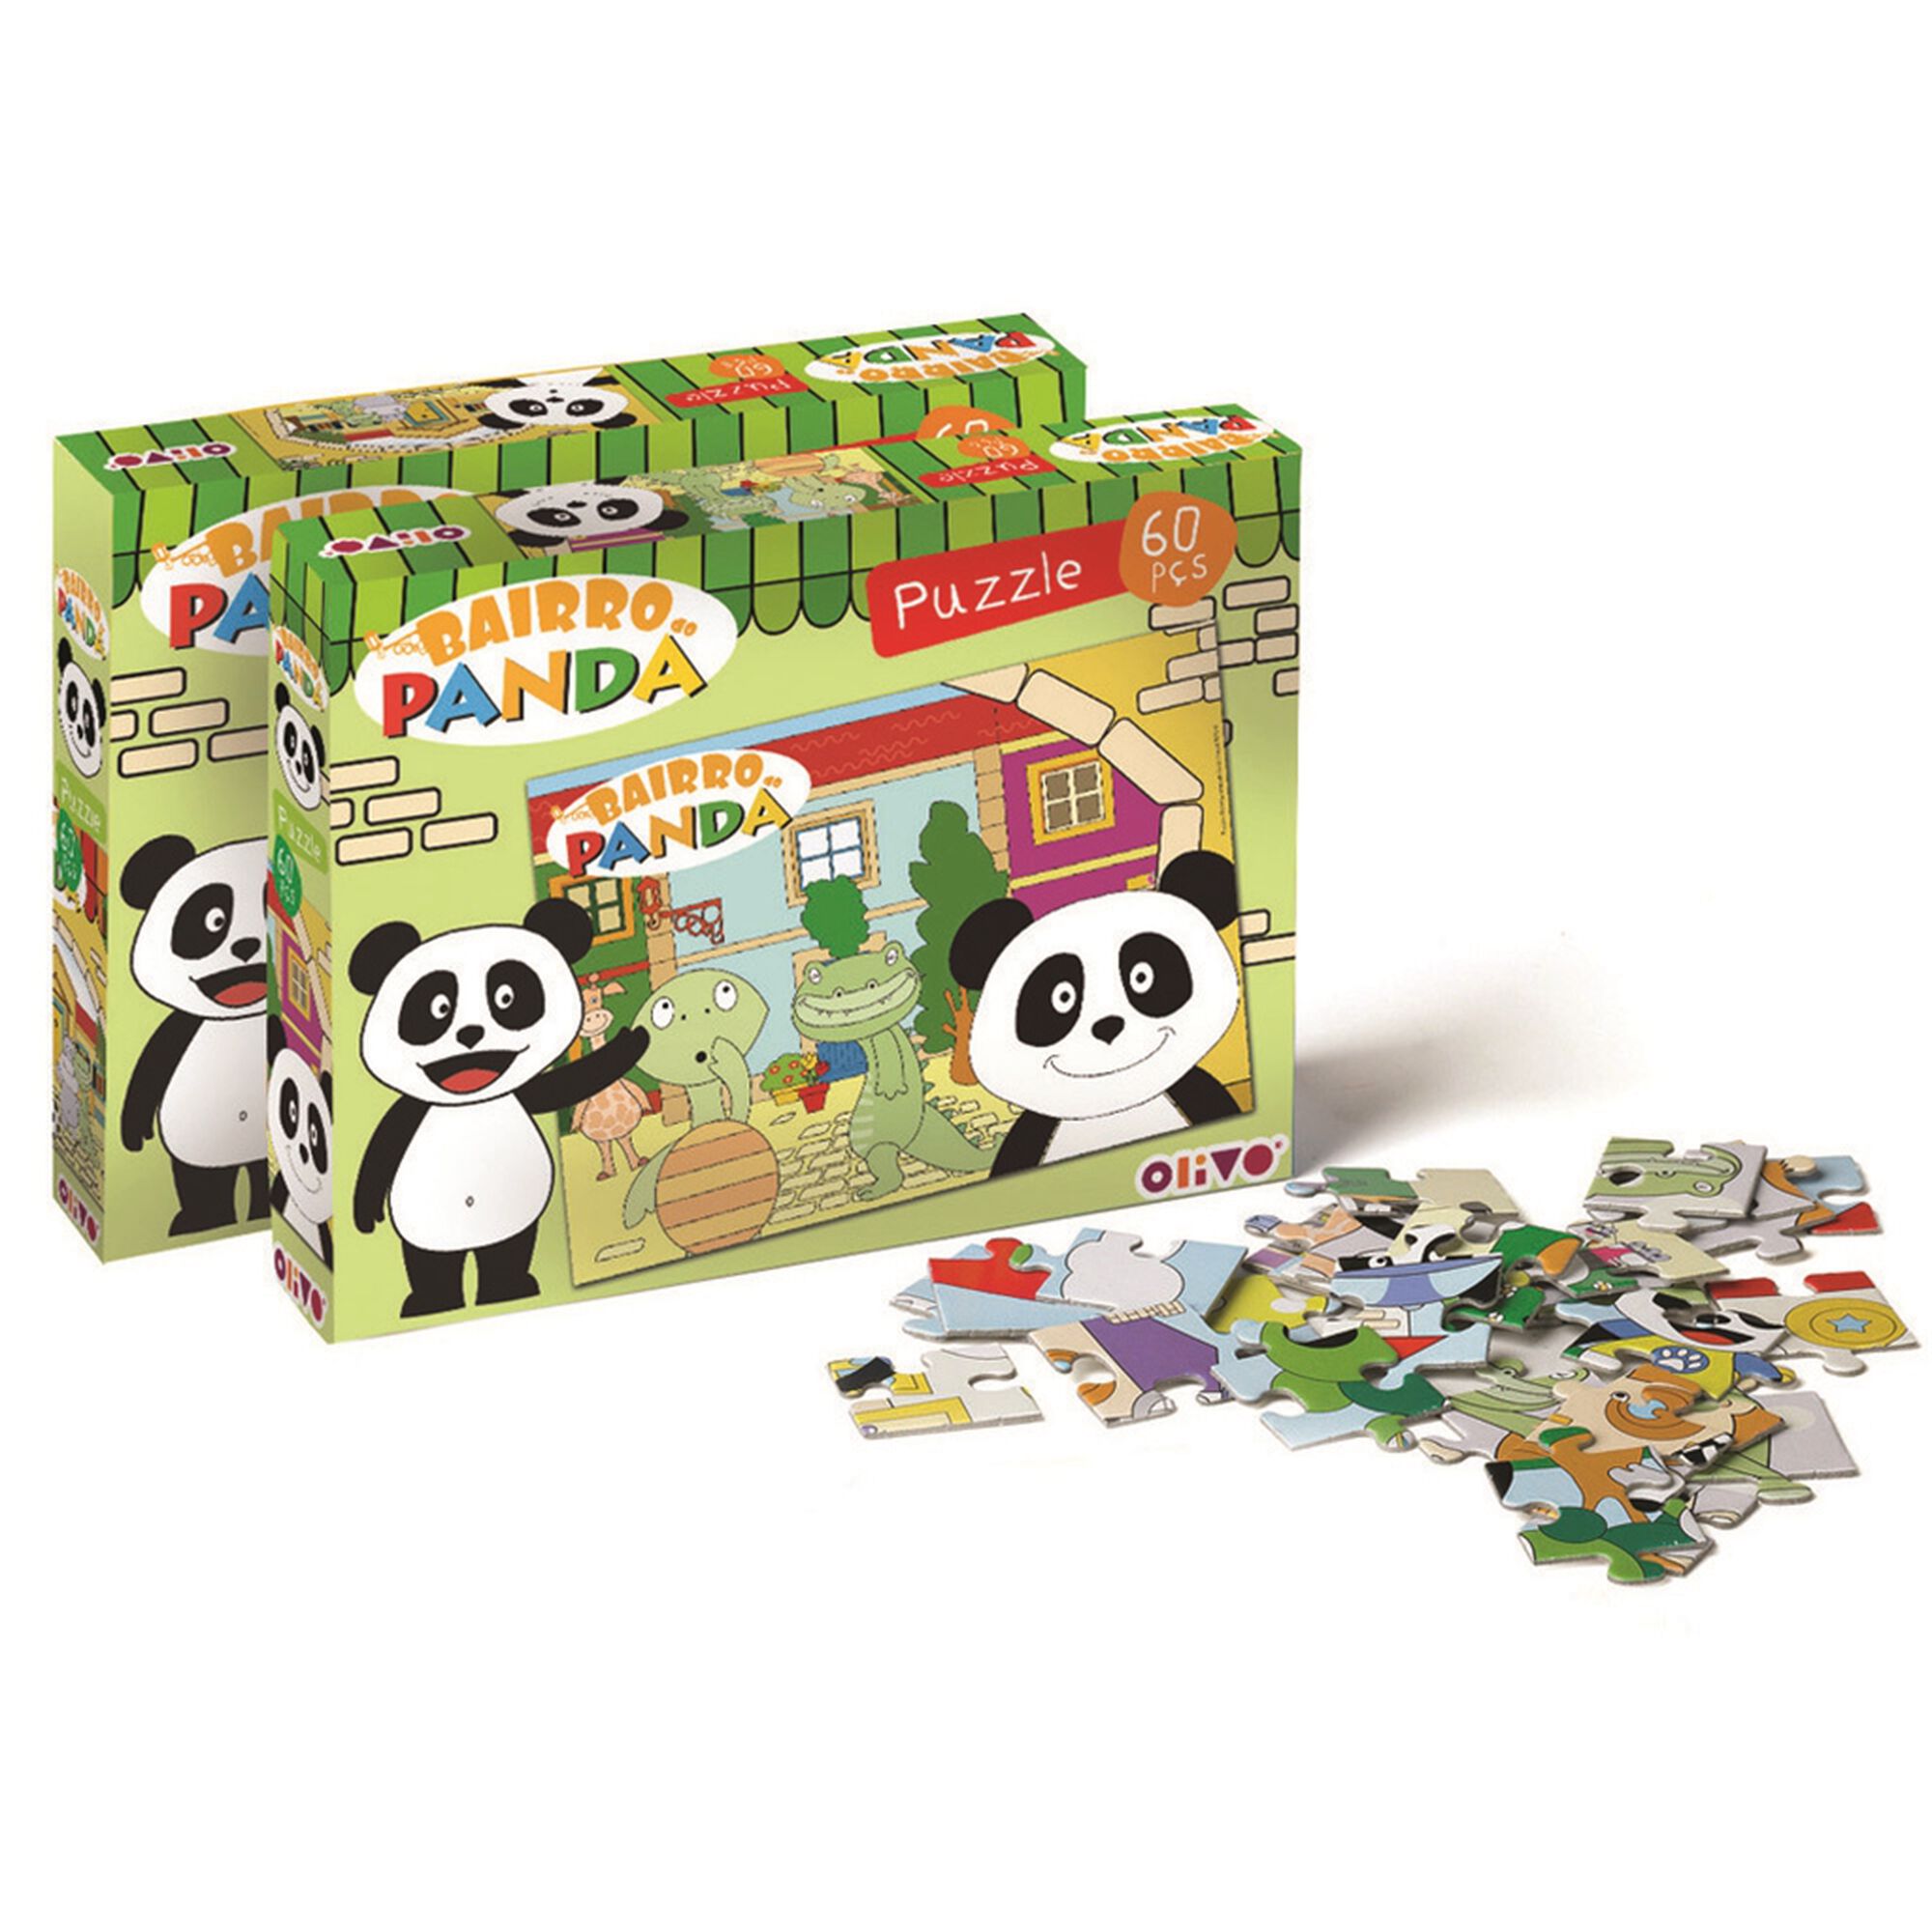 Puzzle Panda 60 Peças (vários modelos)